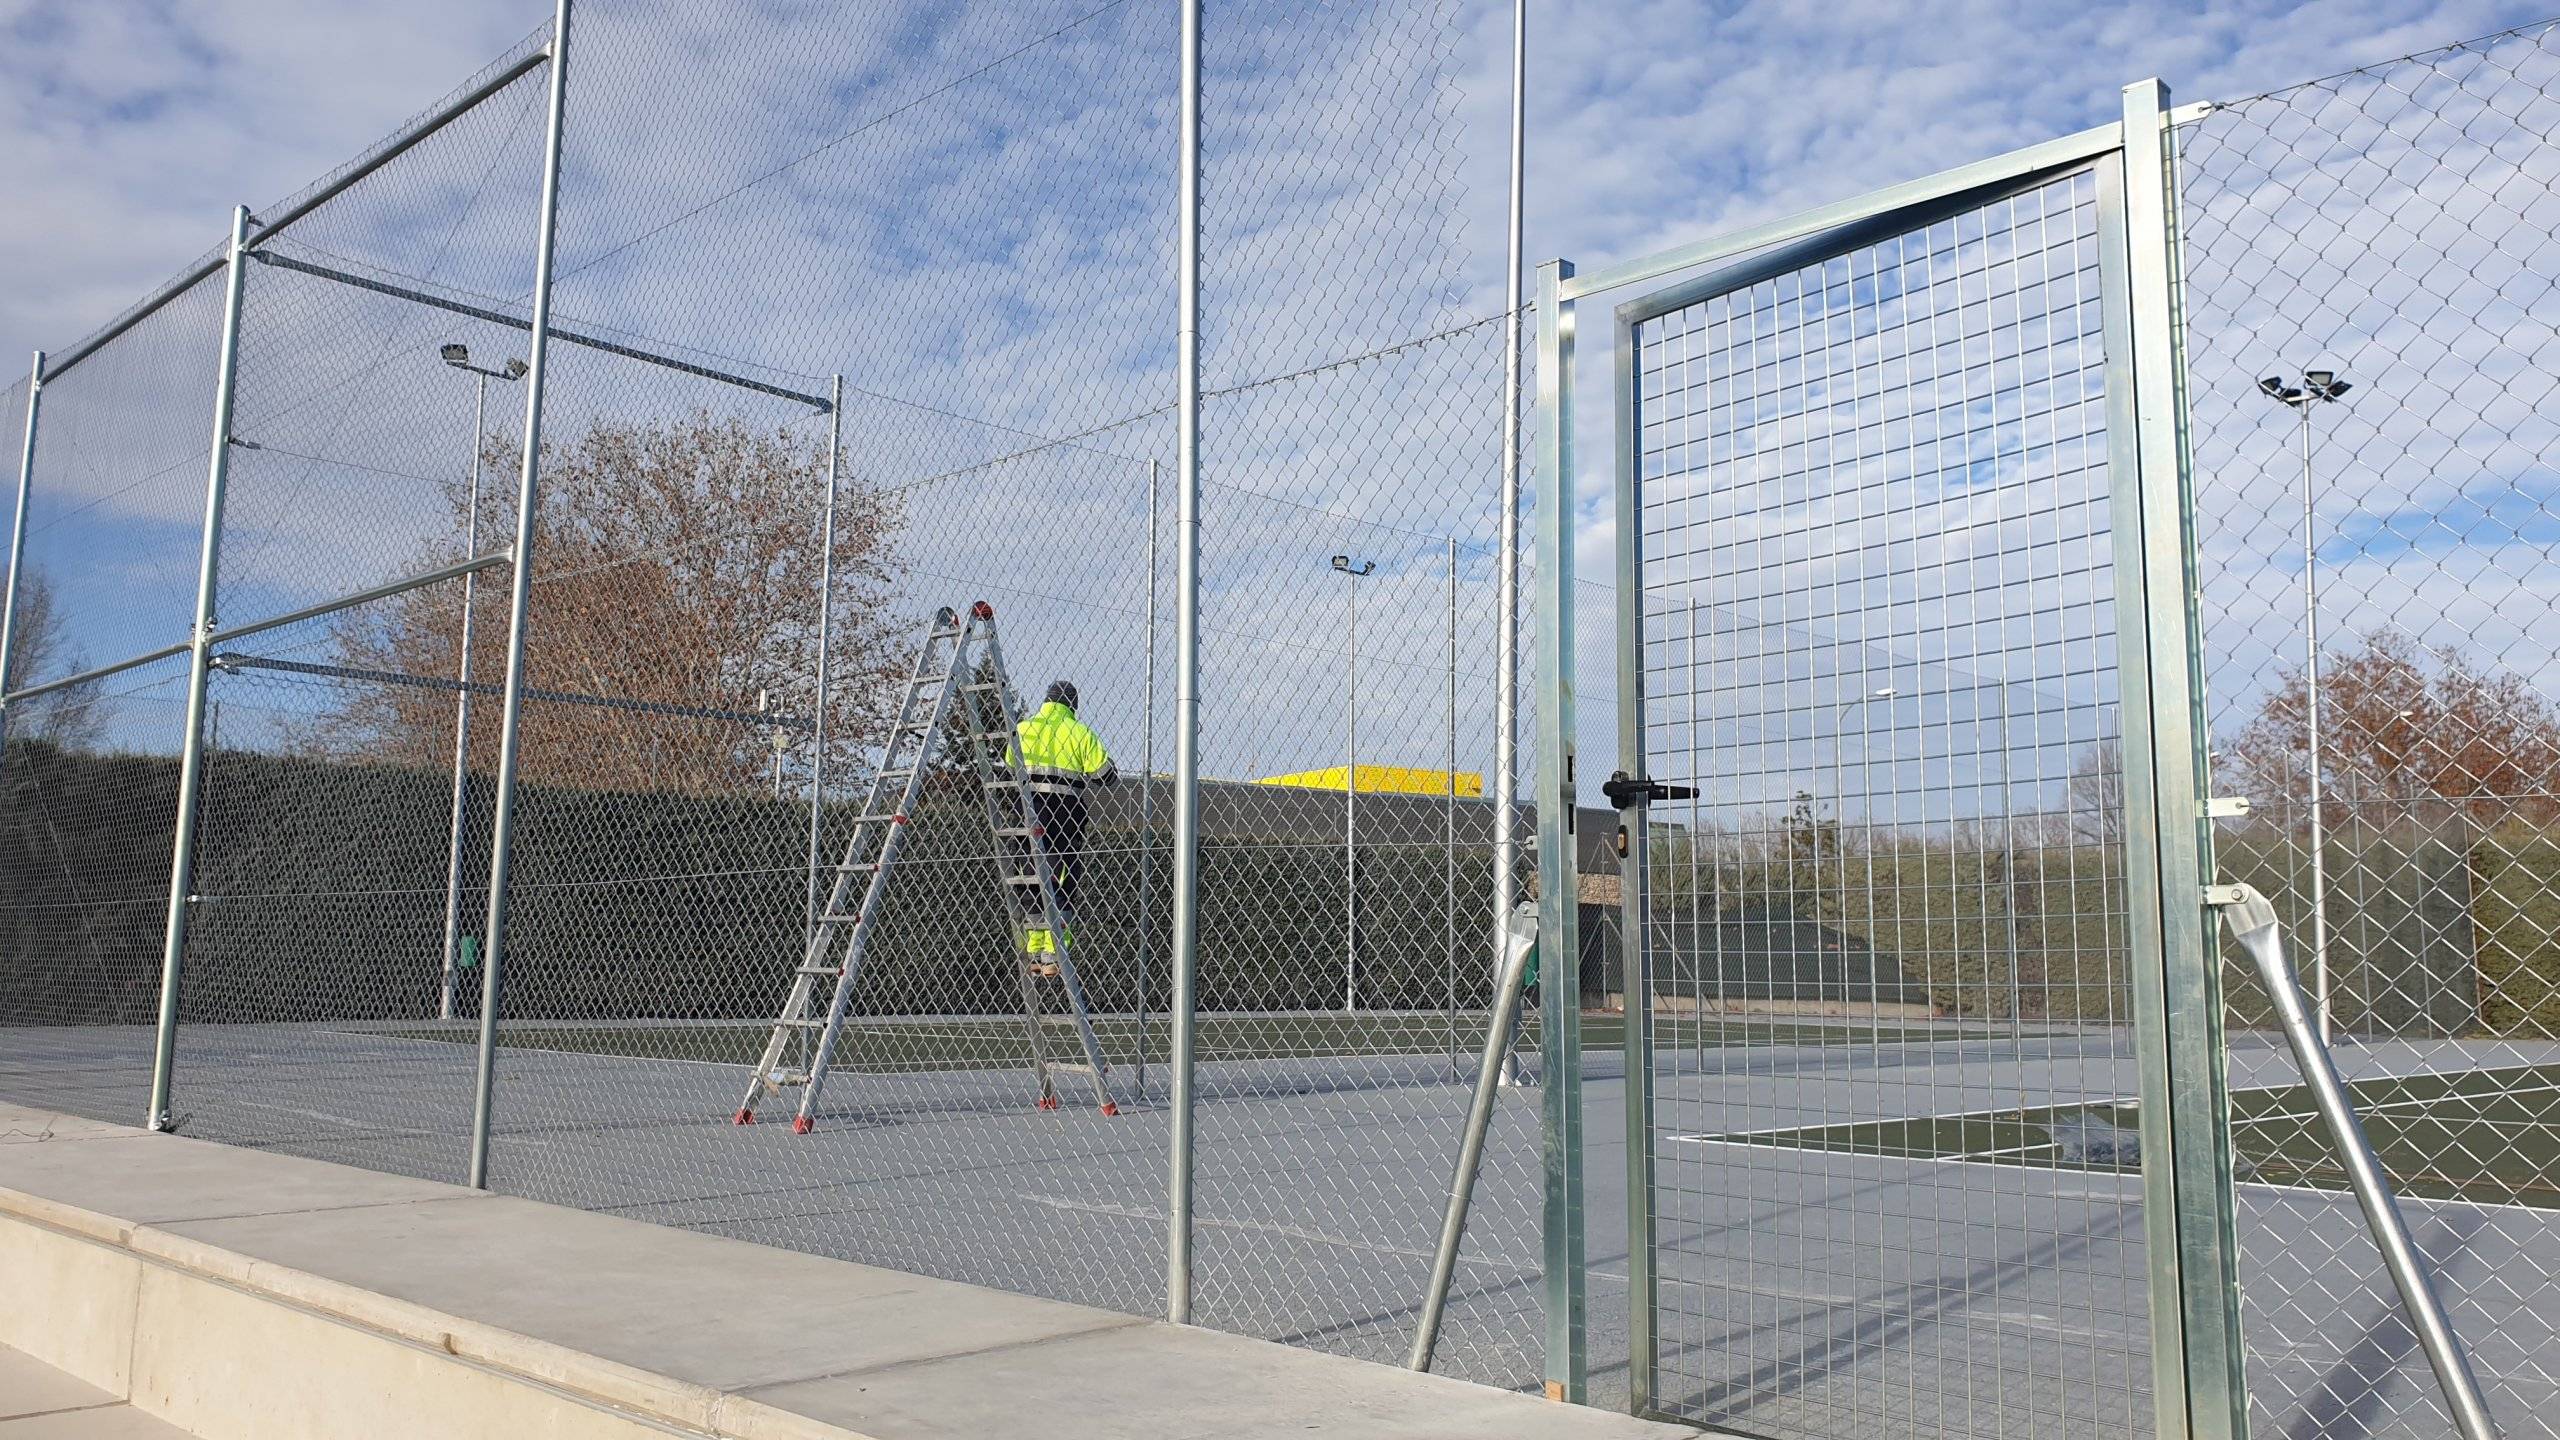 Trabajador realizando labores de rehabilitación de las pistas de tenis.